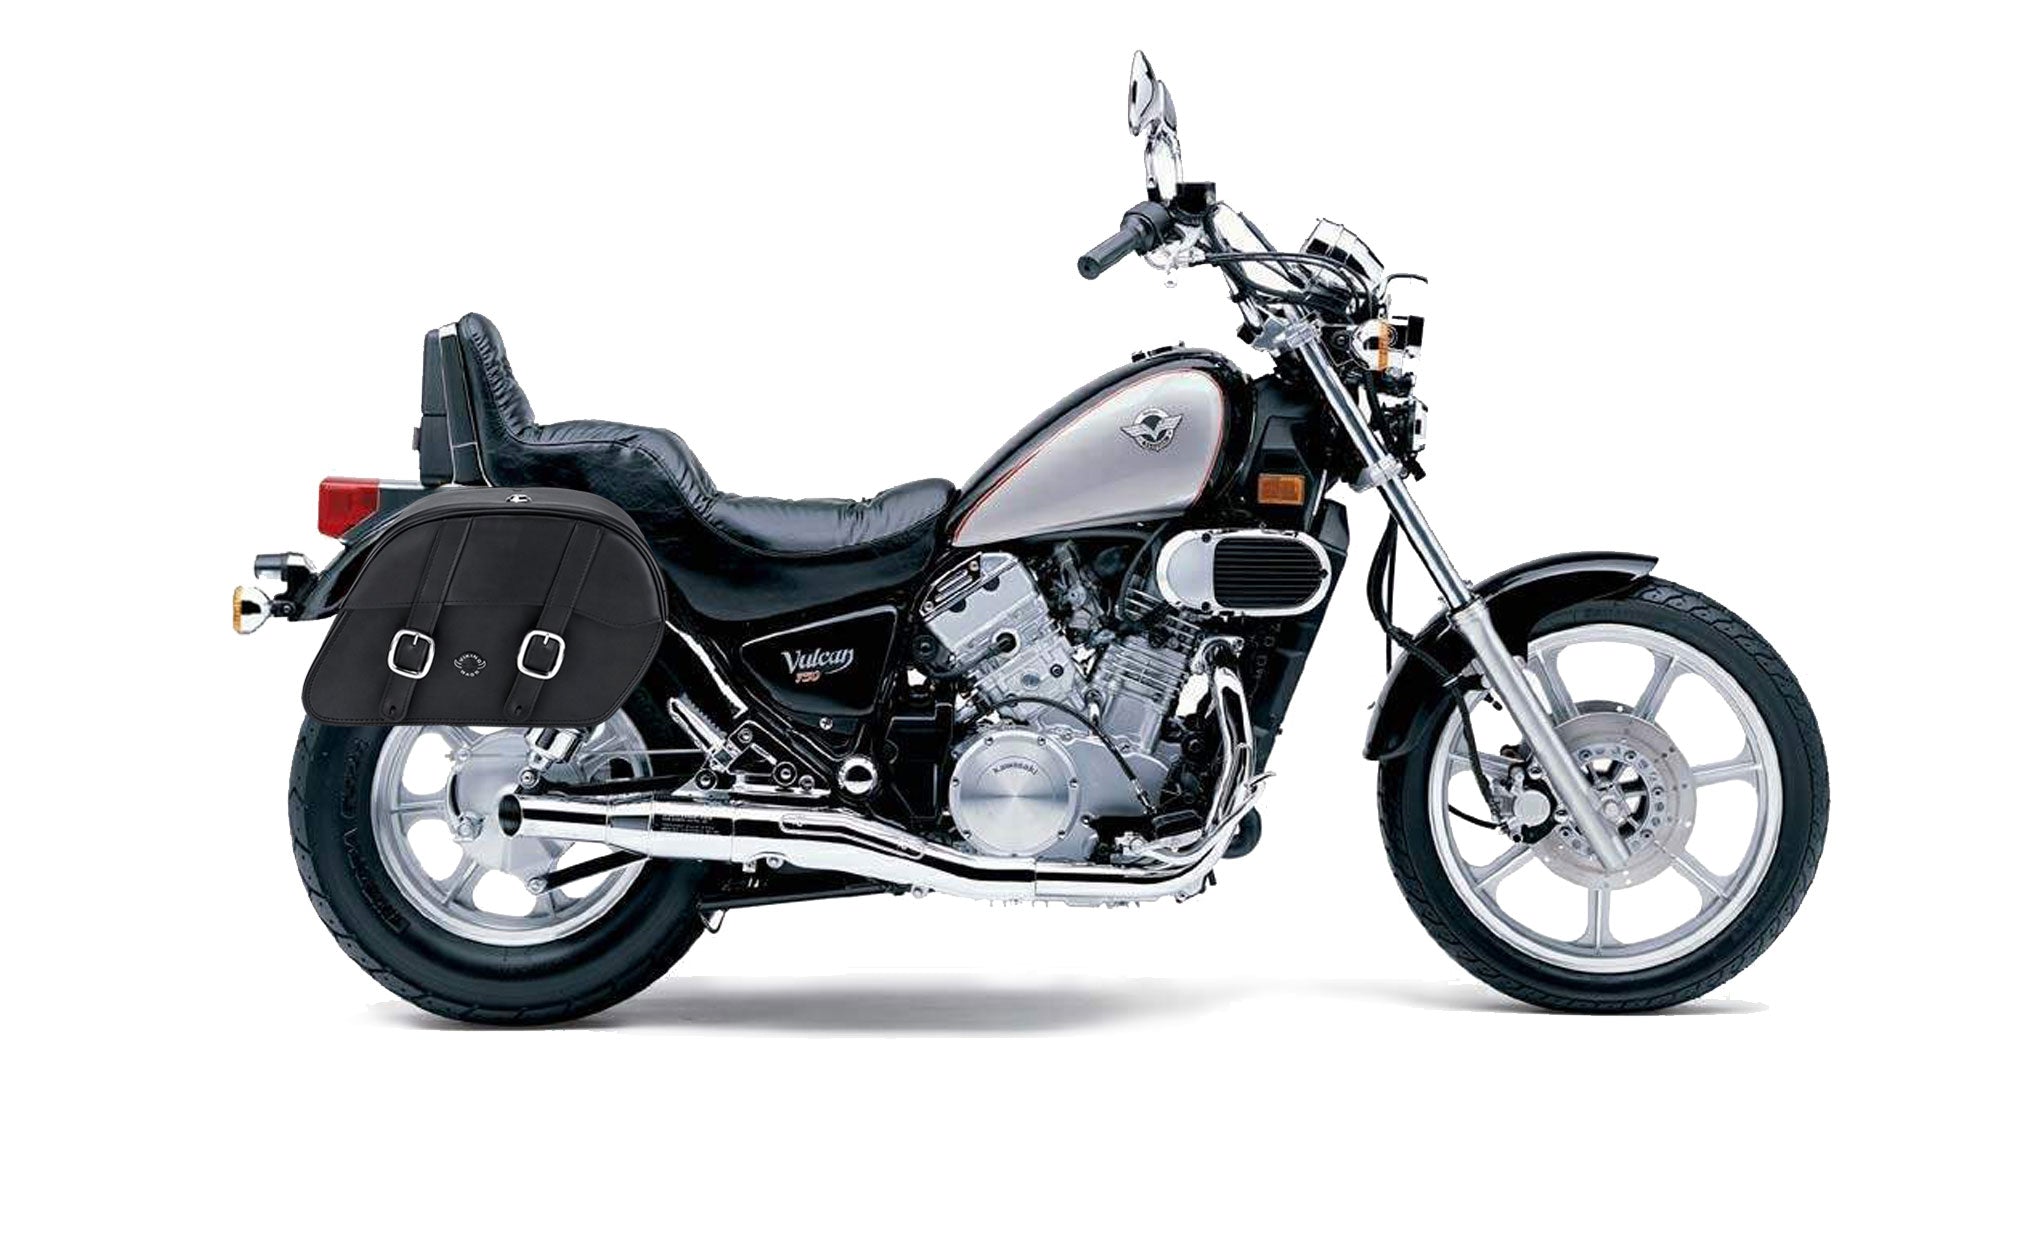 Viking Skarner Large Kawasaki Vulcan 750 Vn750 Shock Cut Out Leather Motorcycle Saddlebags on Bike Photo @expand